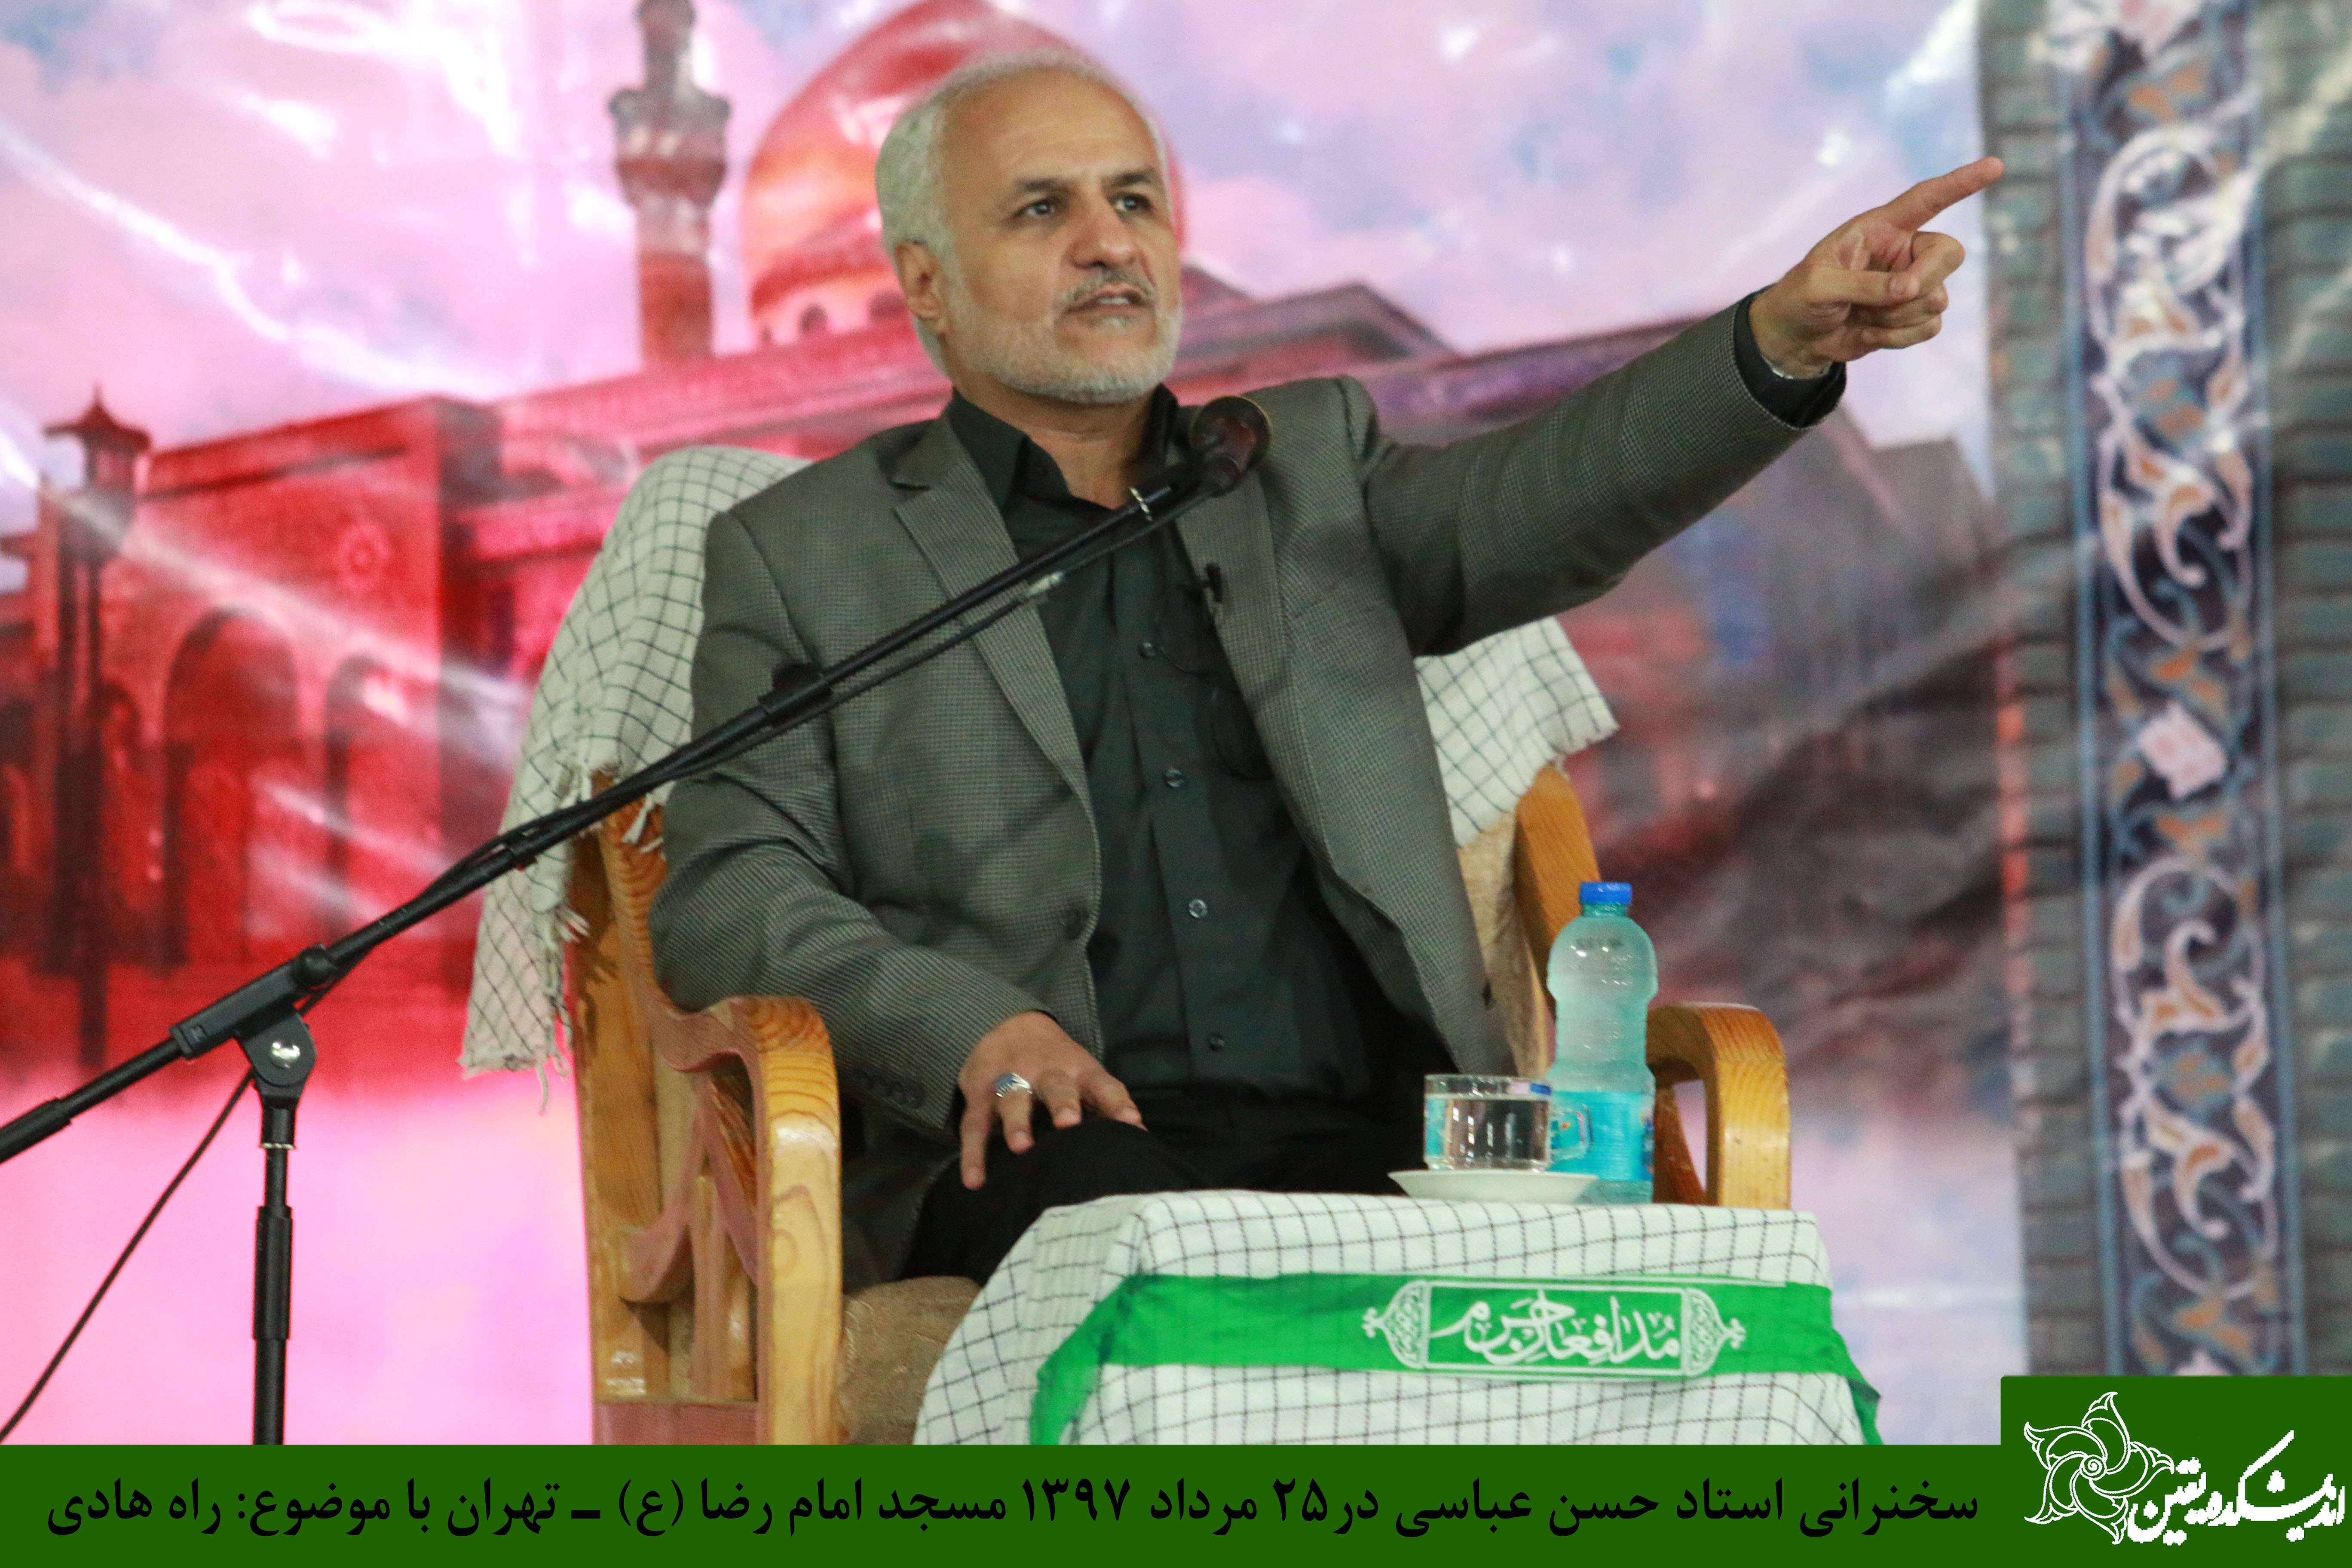 سخنرانی استاد حسن عباسی در مسجد امام رضا(ع) حکیمیه - راه هادی